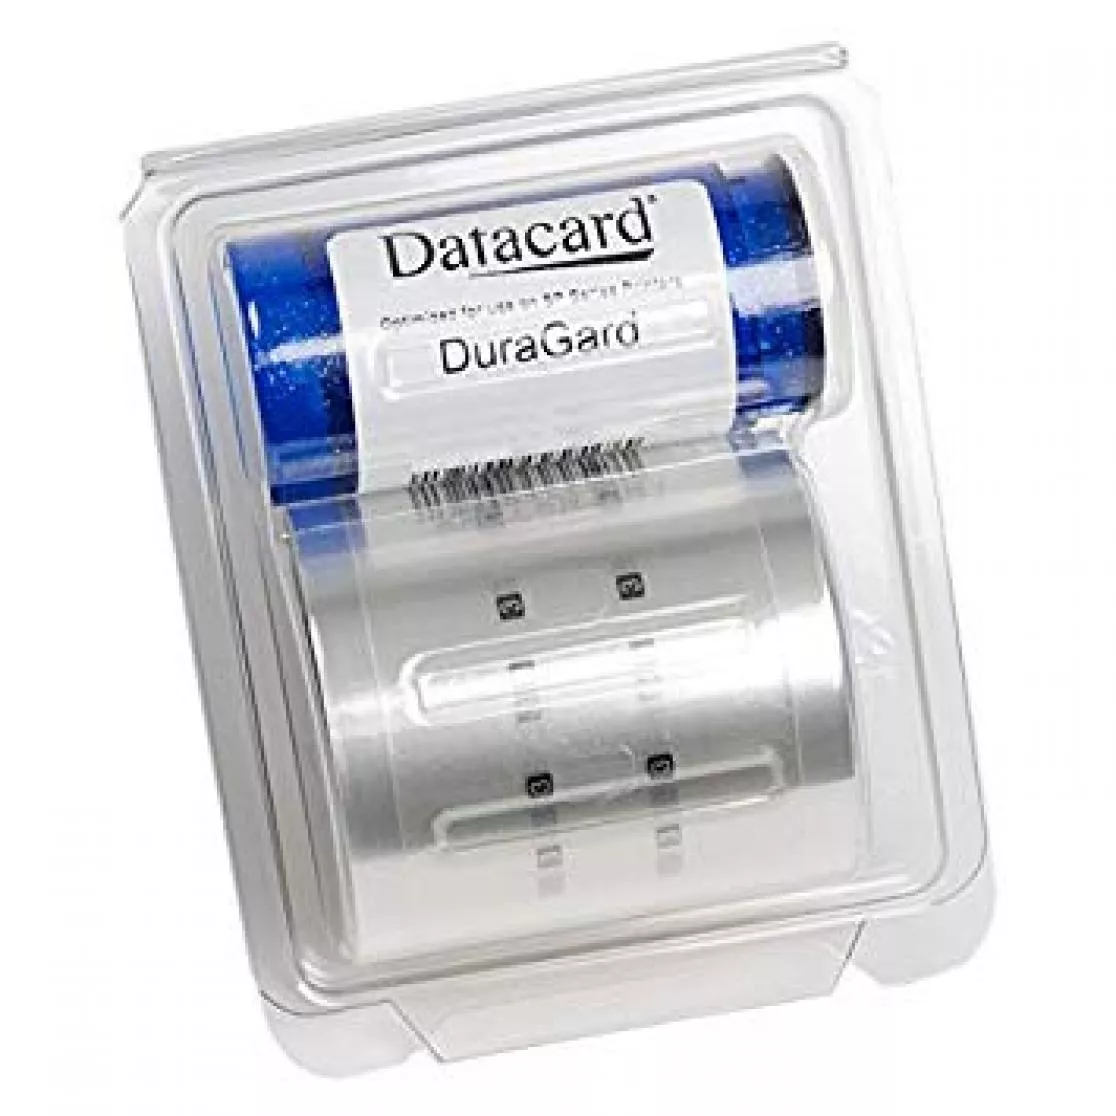 DuraGard UV protective laminate for card printer datacard SD460